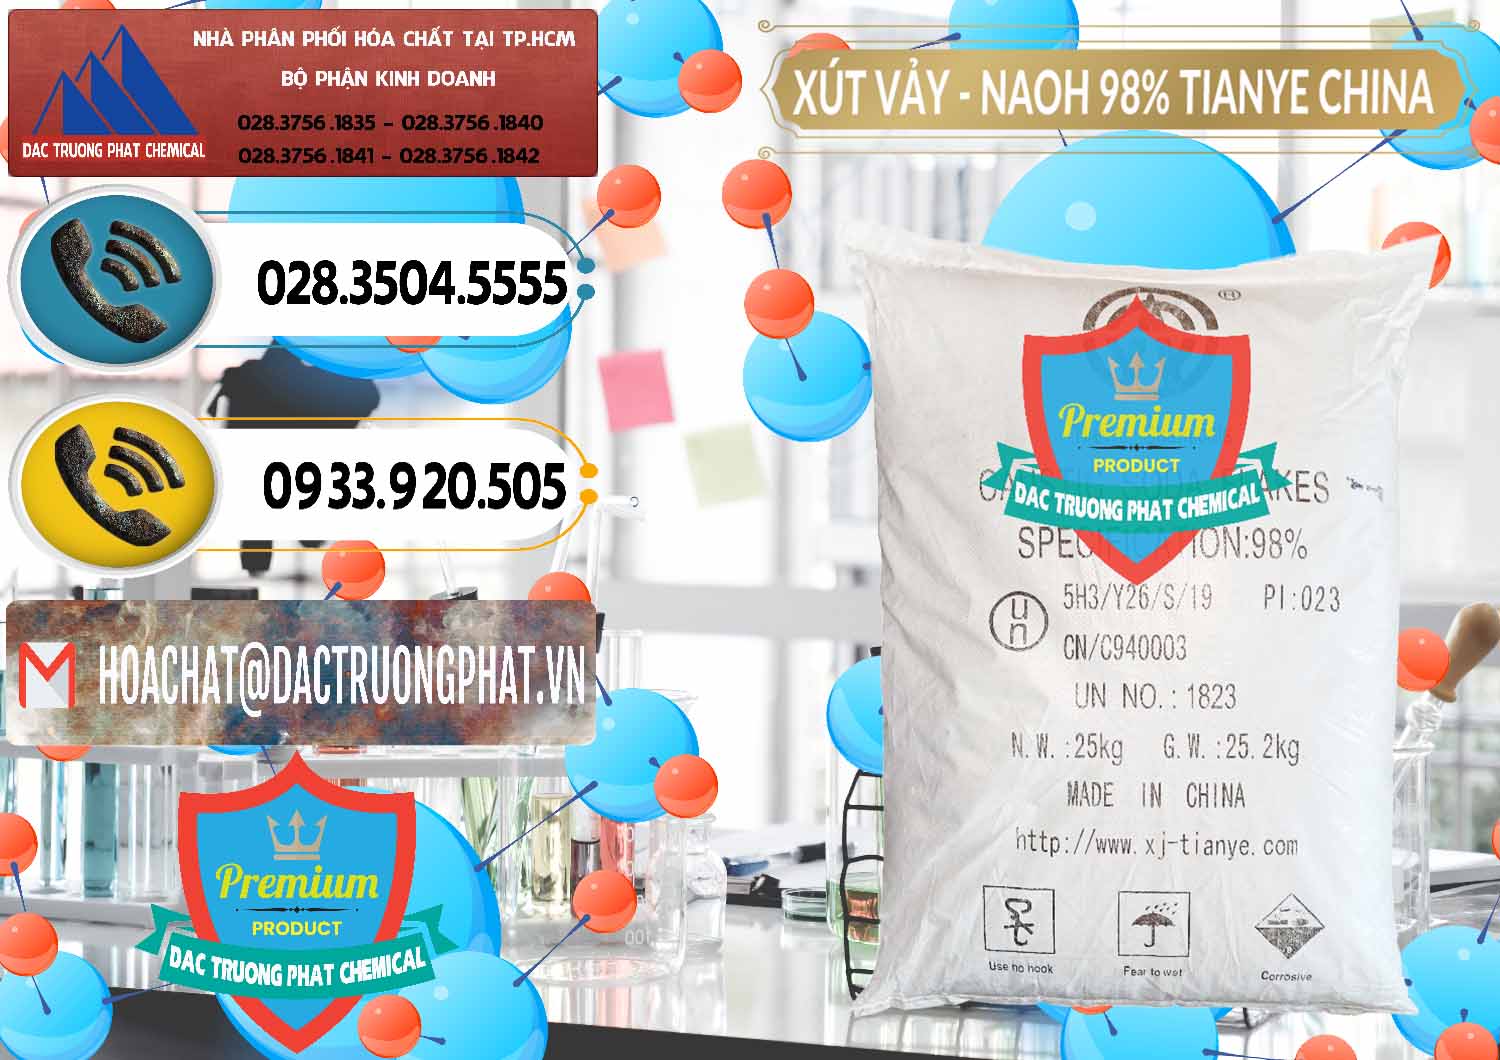 Cty bán & cung ứng Xút Vảy - NaOH Vảy 98% Tianye Trung Quốc China - 0177 - Chuyên cung cấp _ kinh doanh hóa chất tại TP.HCM - hoachatdetnhuom.vn